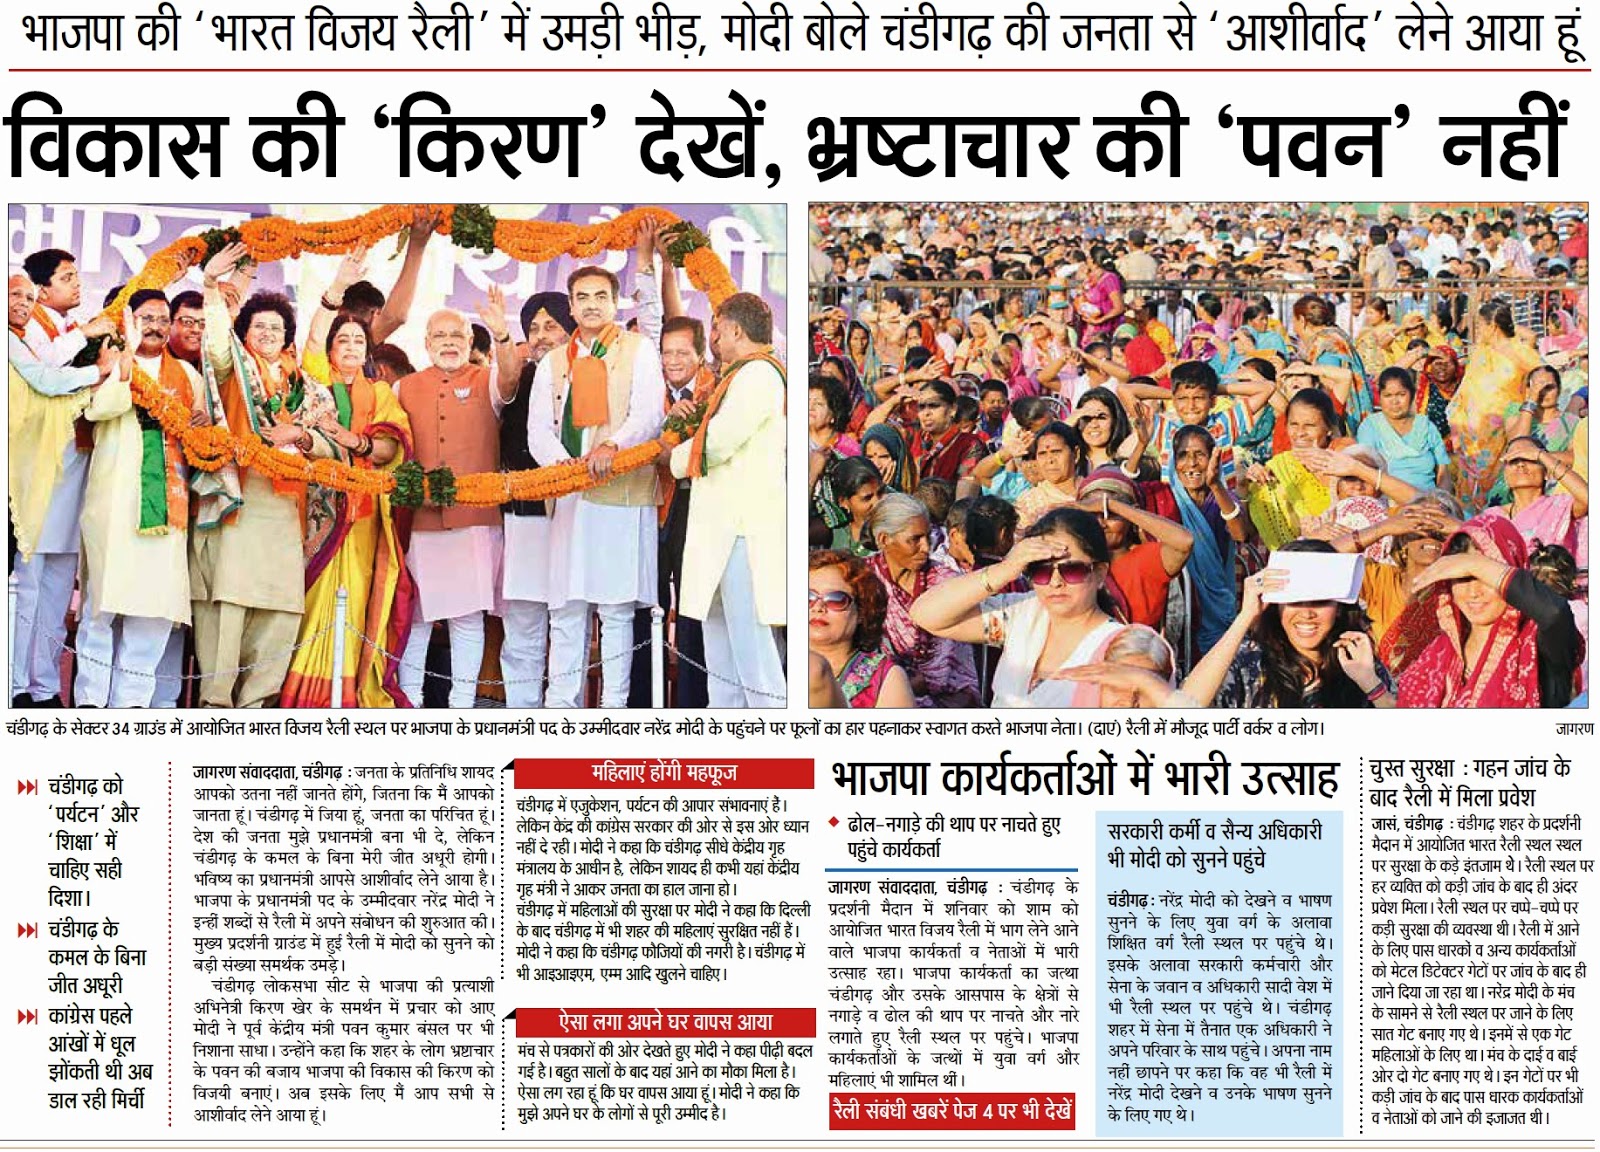 चंडीगढ़ के सेक्टर 34 ग्राउंड में आयोजित भारत विजय रैली स्थल पर भाजपा के प्रधानमंत्री पद के उम्मीदवार नरेंद्र मोदी के पहुंचने पर फूलों का हार पहनाकर स्वागत करते भाजपा के पूर्व सांसद सत्य पाल जैन व अन्य